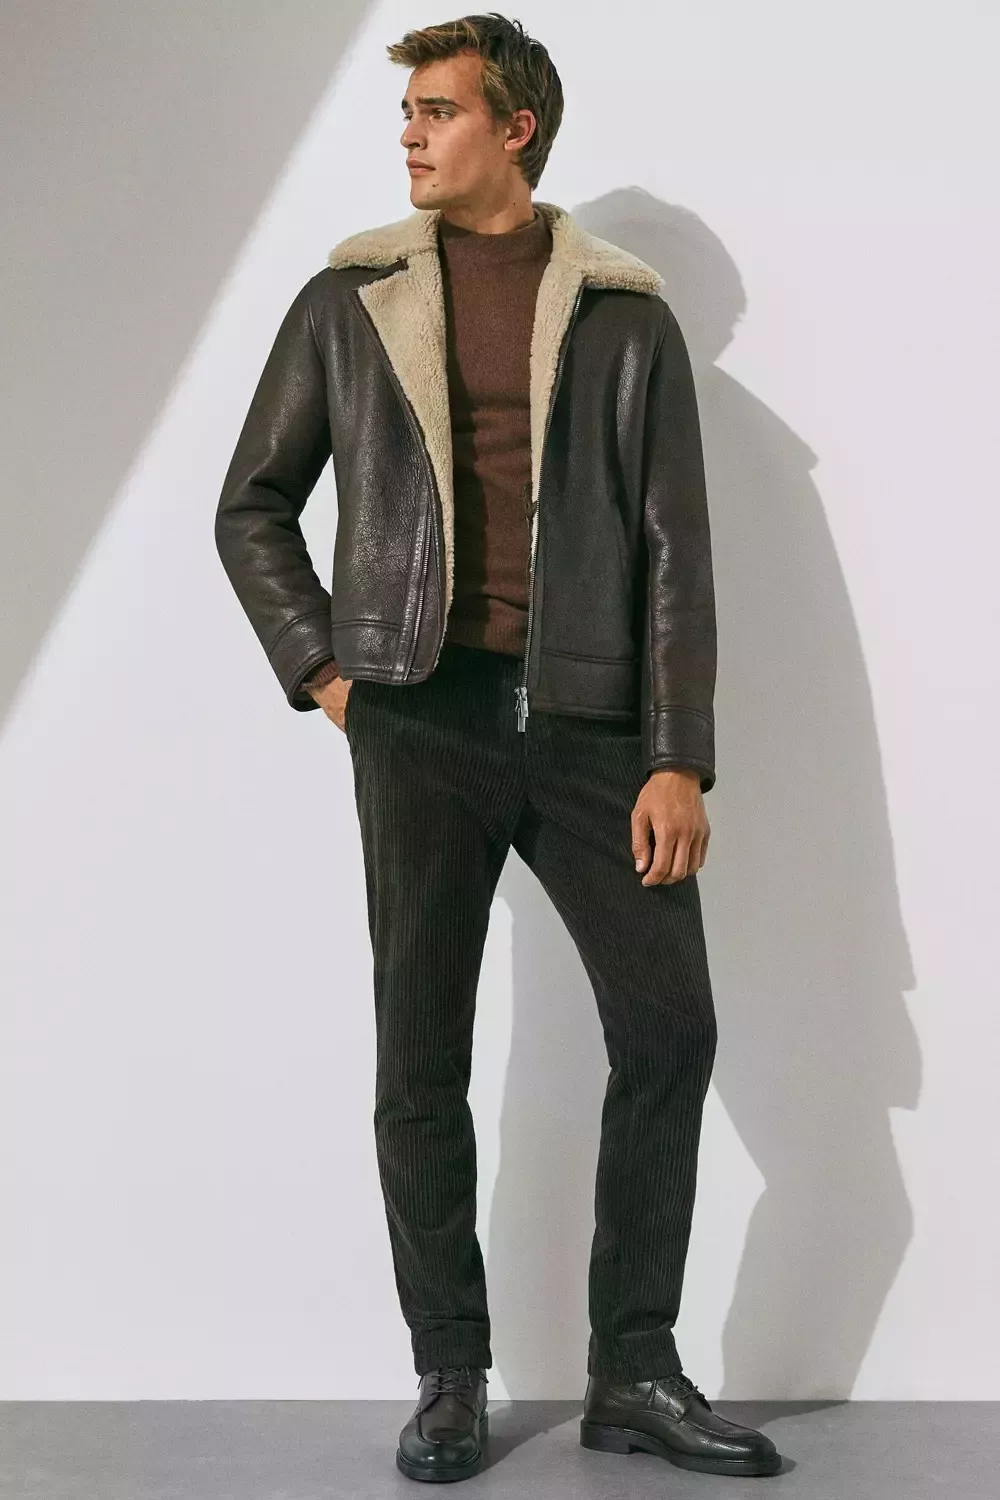 Cómo llevar una chaqueta de cuero: 5 conjuntos elegantes y modernos para hombres